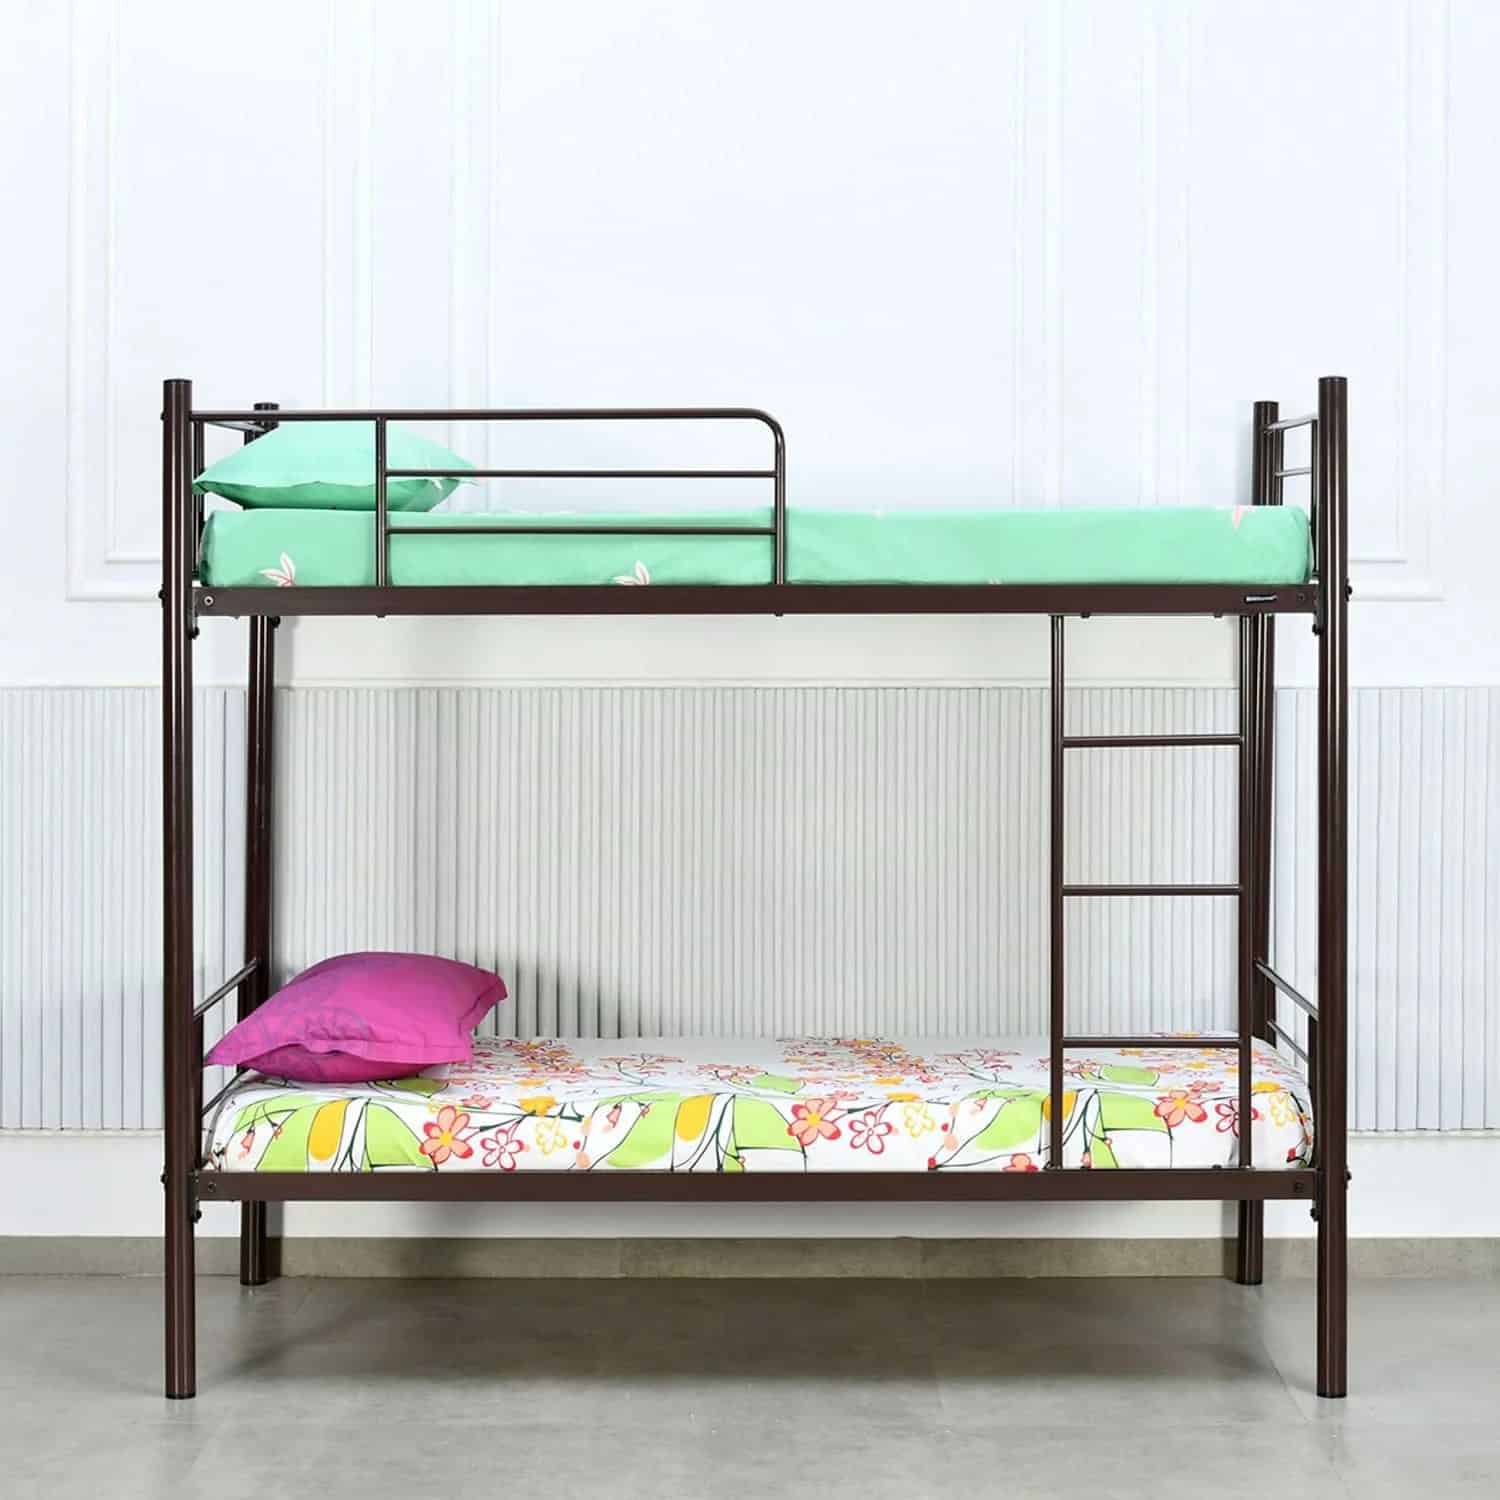 Nilkamal metal bed with two sleepers